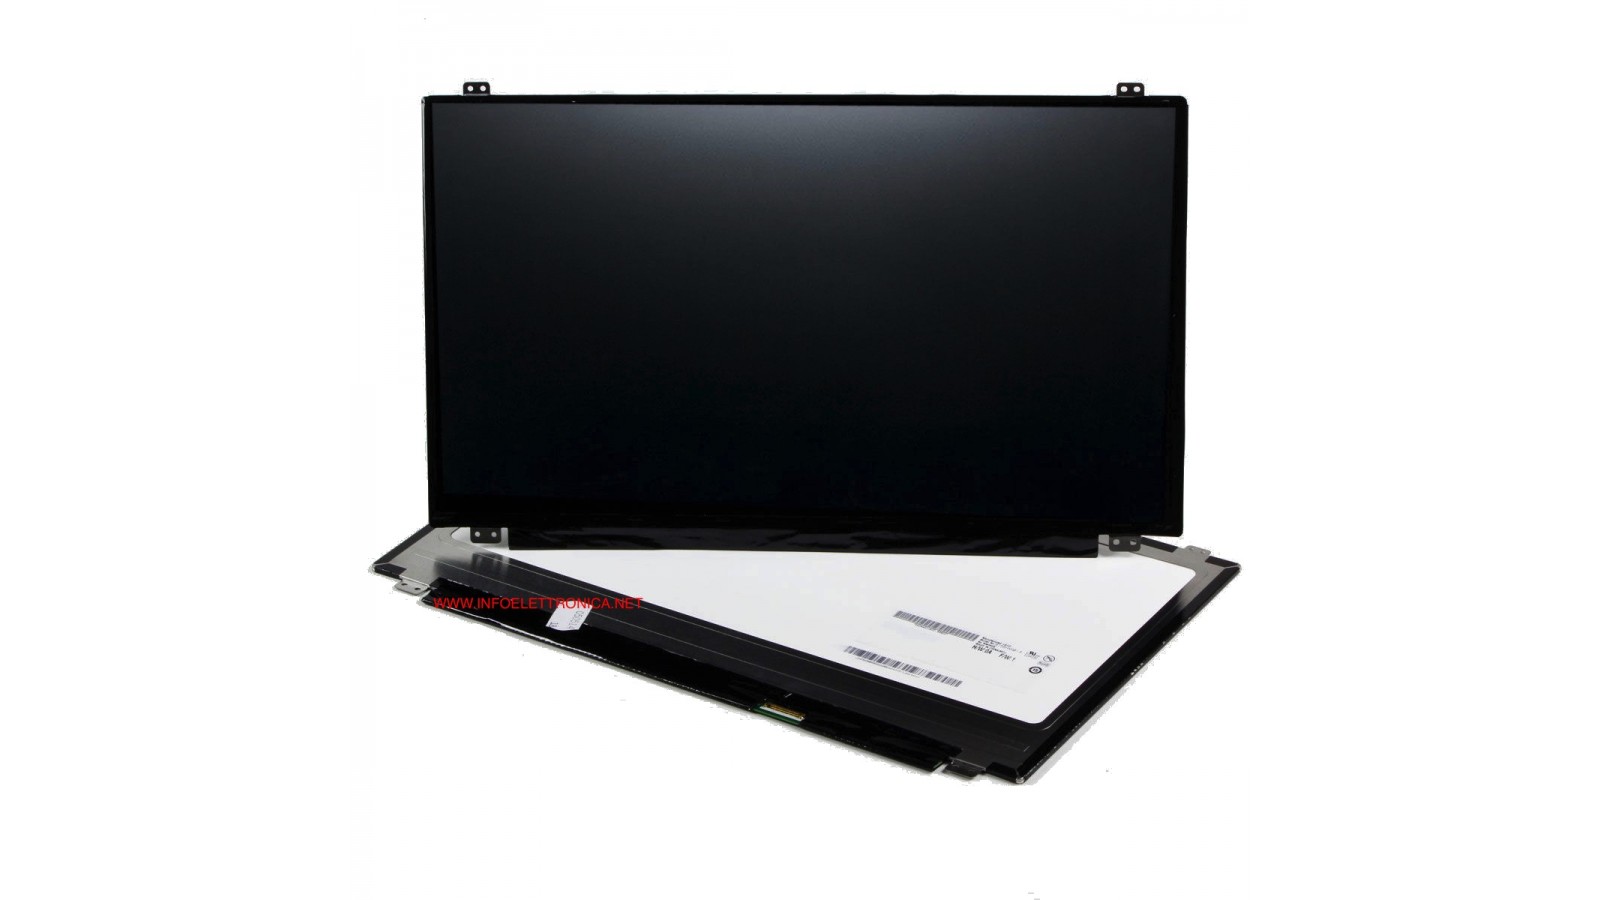 Display LCD Schermo 15,6 Led compatibile con  B156HTN03.0 Full Hd